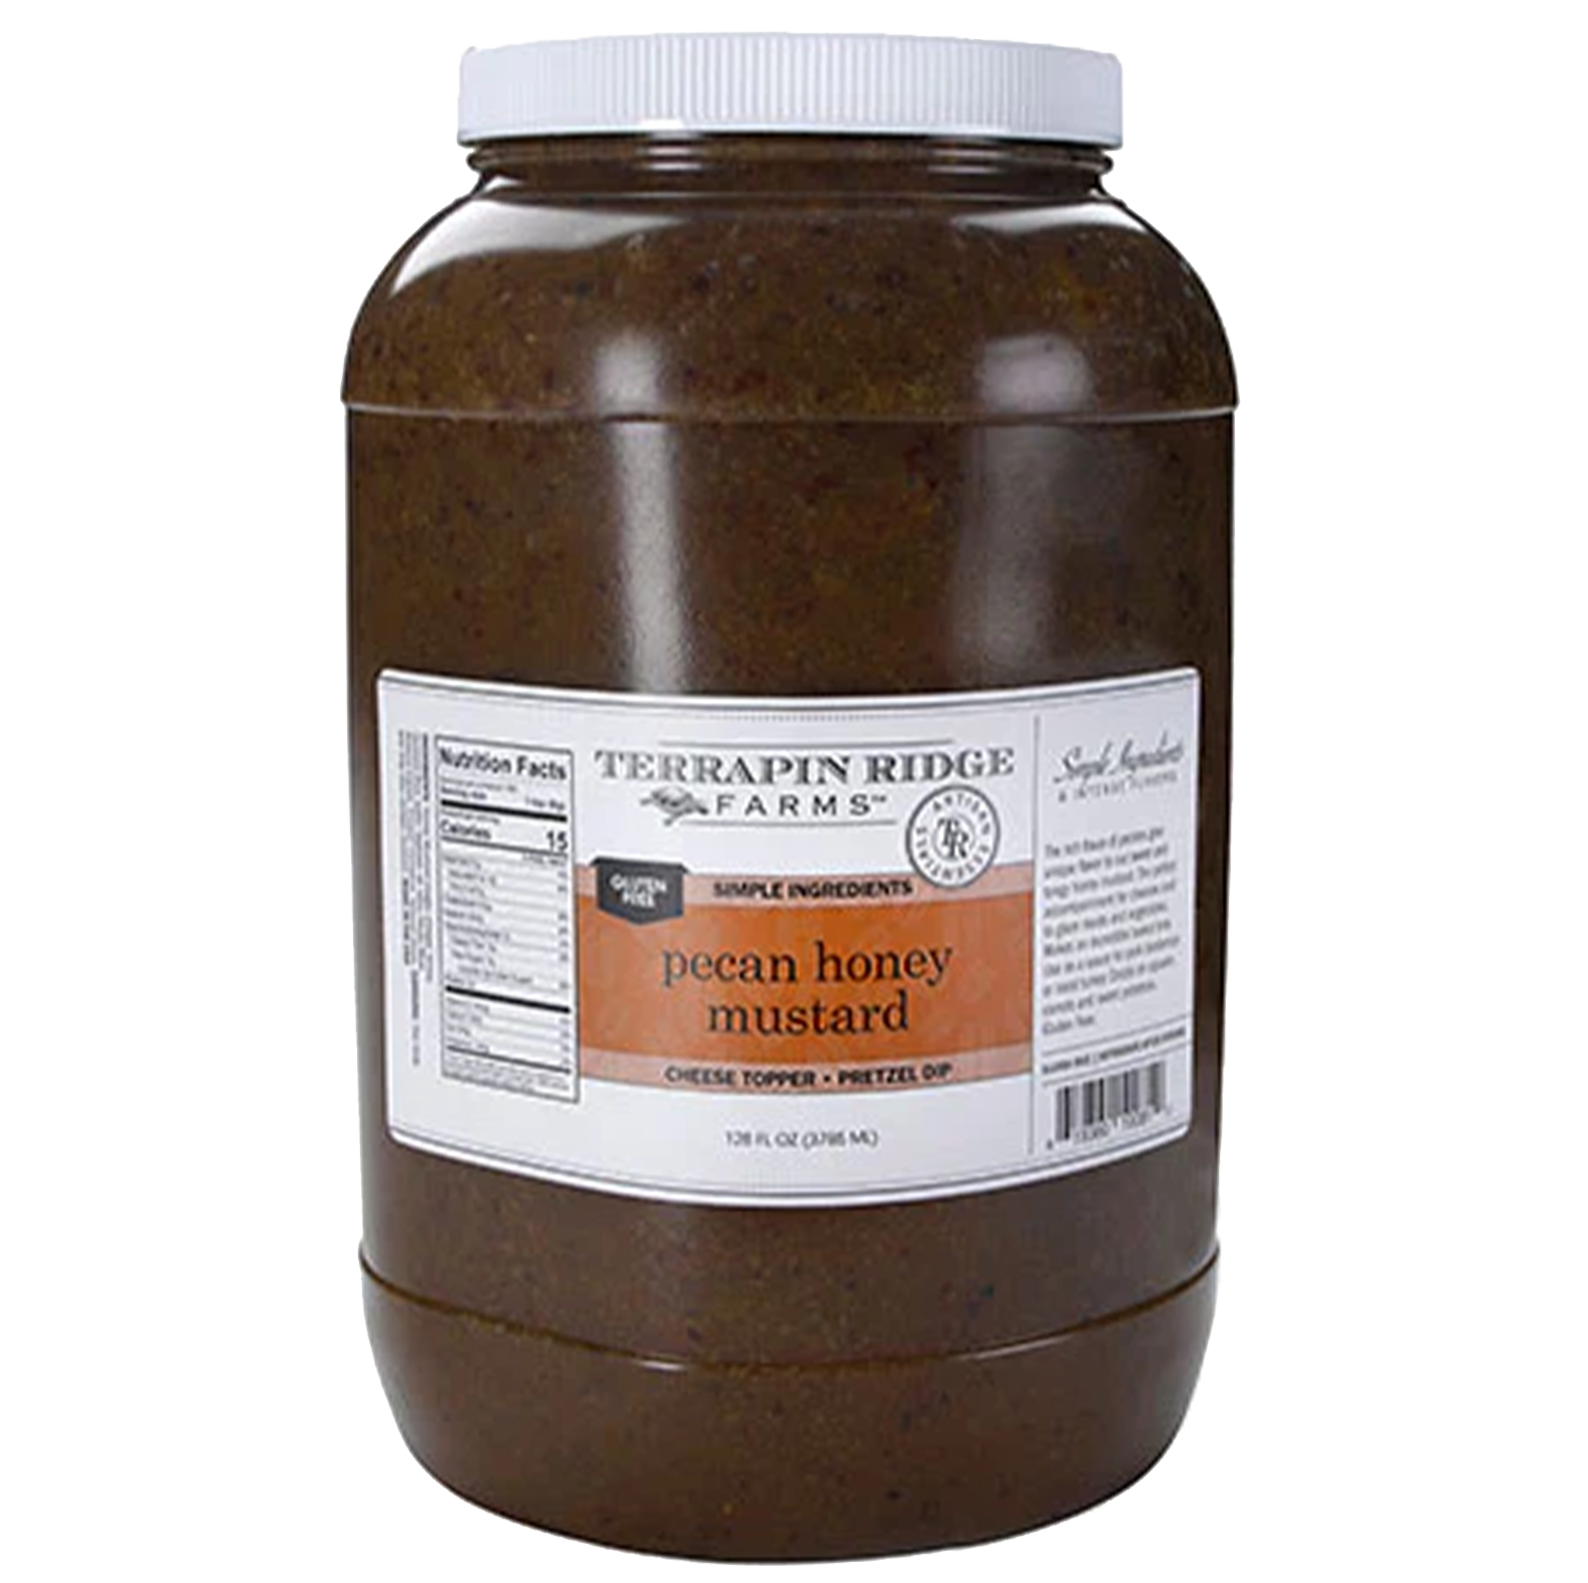 Pecan Honey Mustard - 1 gallon jug